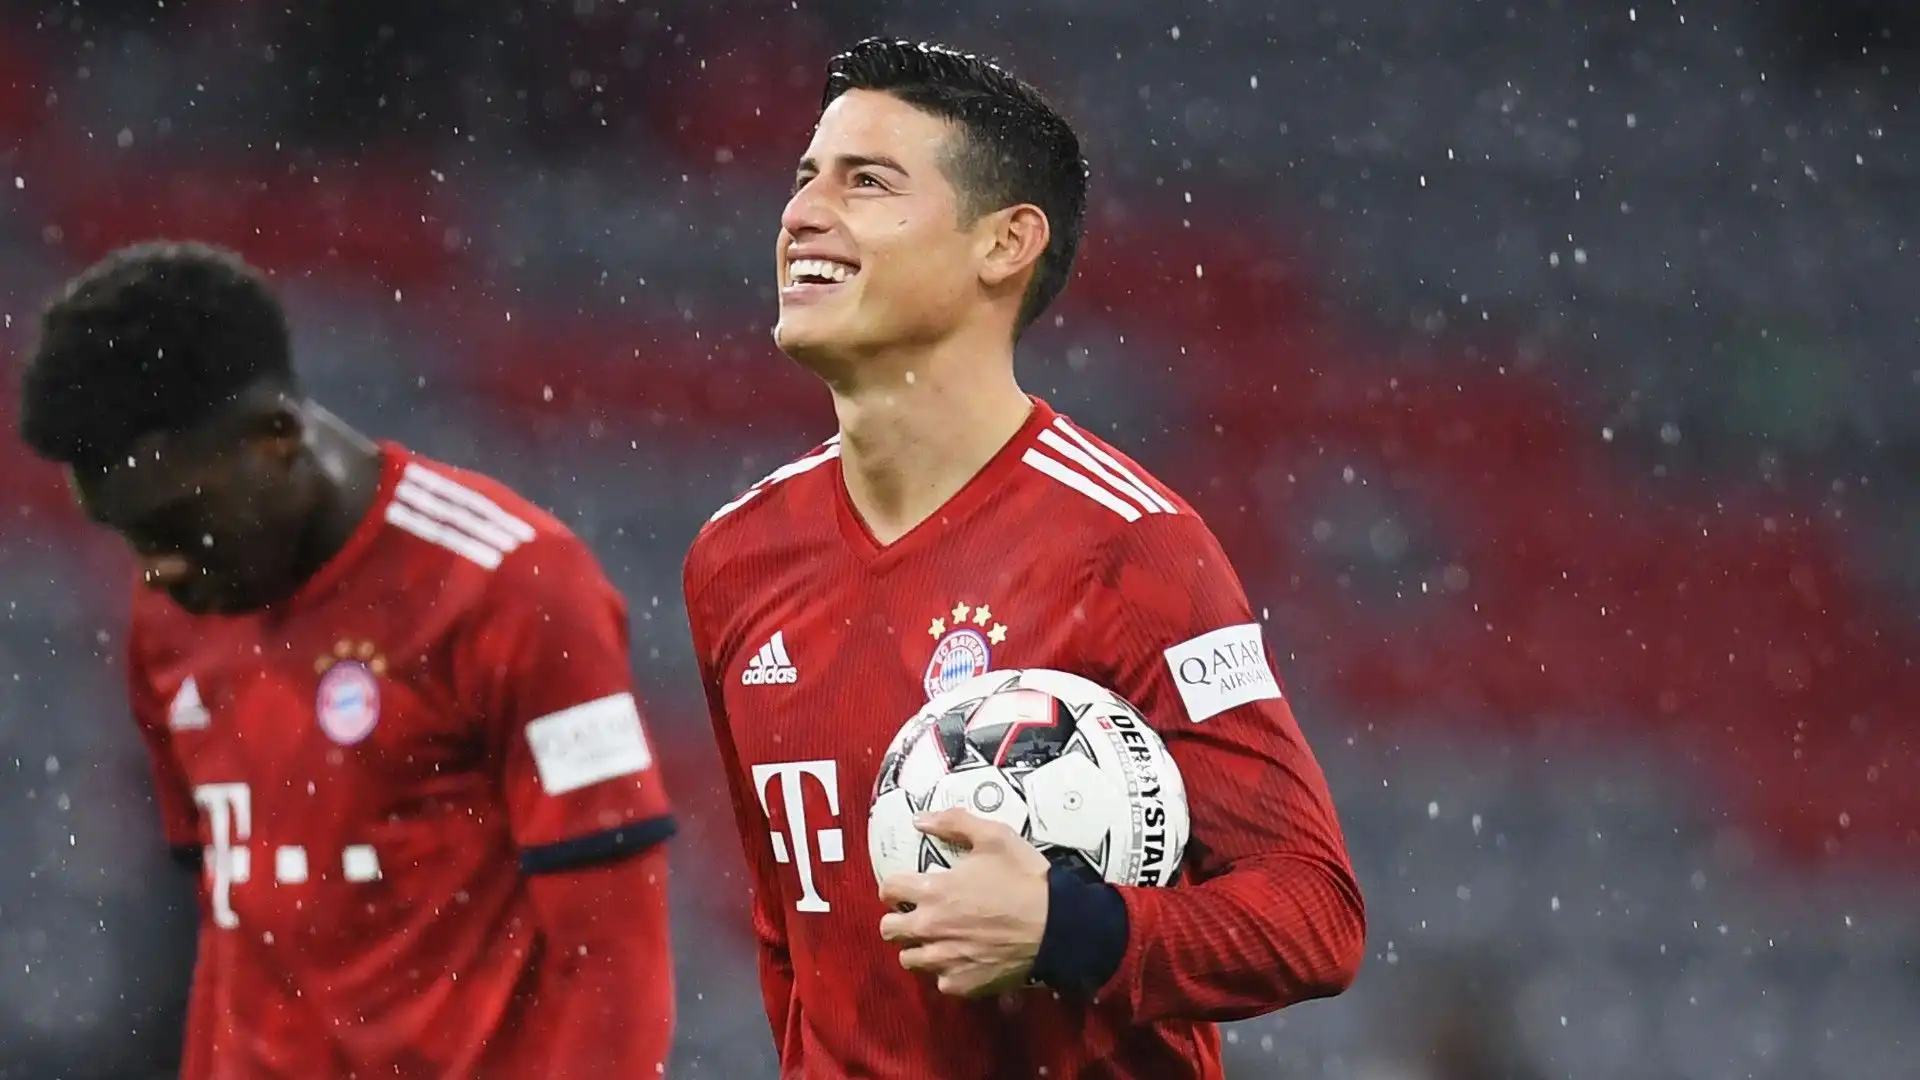 In Germania il calciatore colombiano ha offerto buone prestazioni, successivamente è tornato al Real Madrid